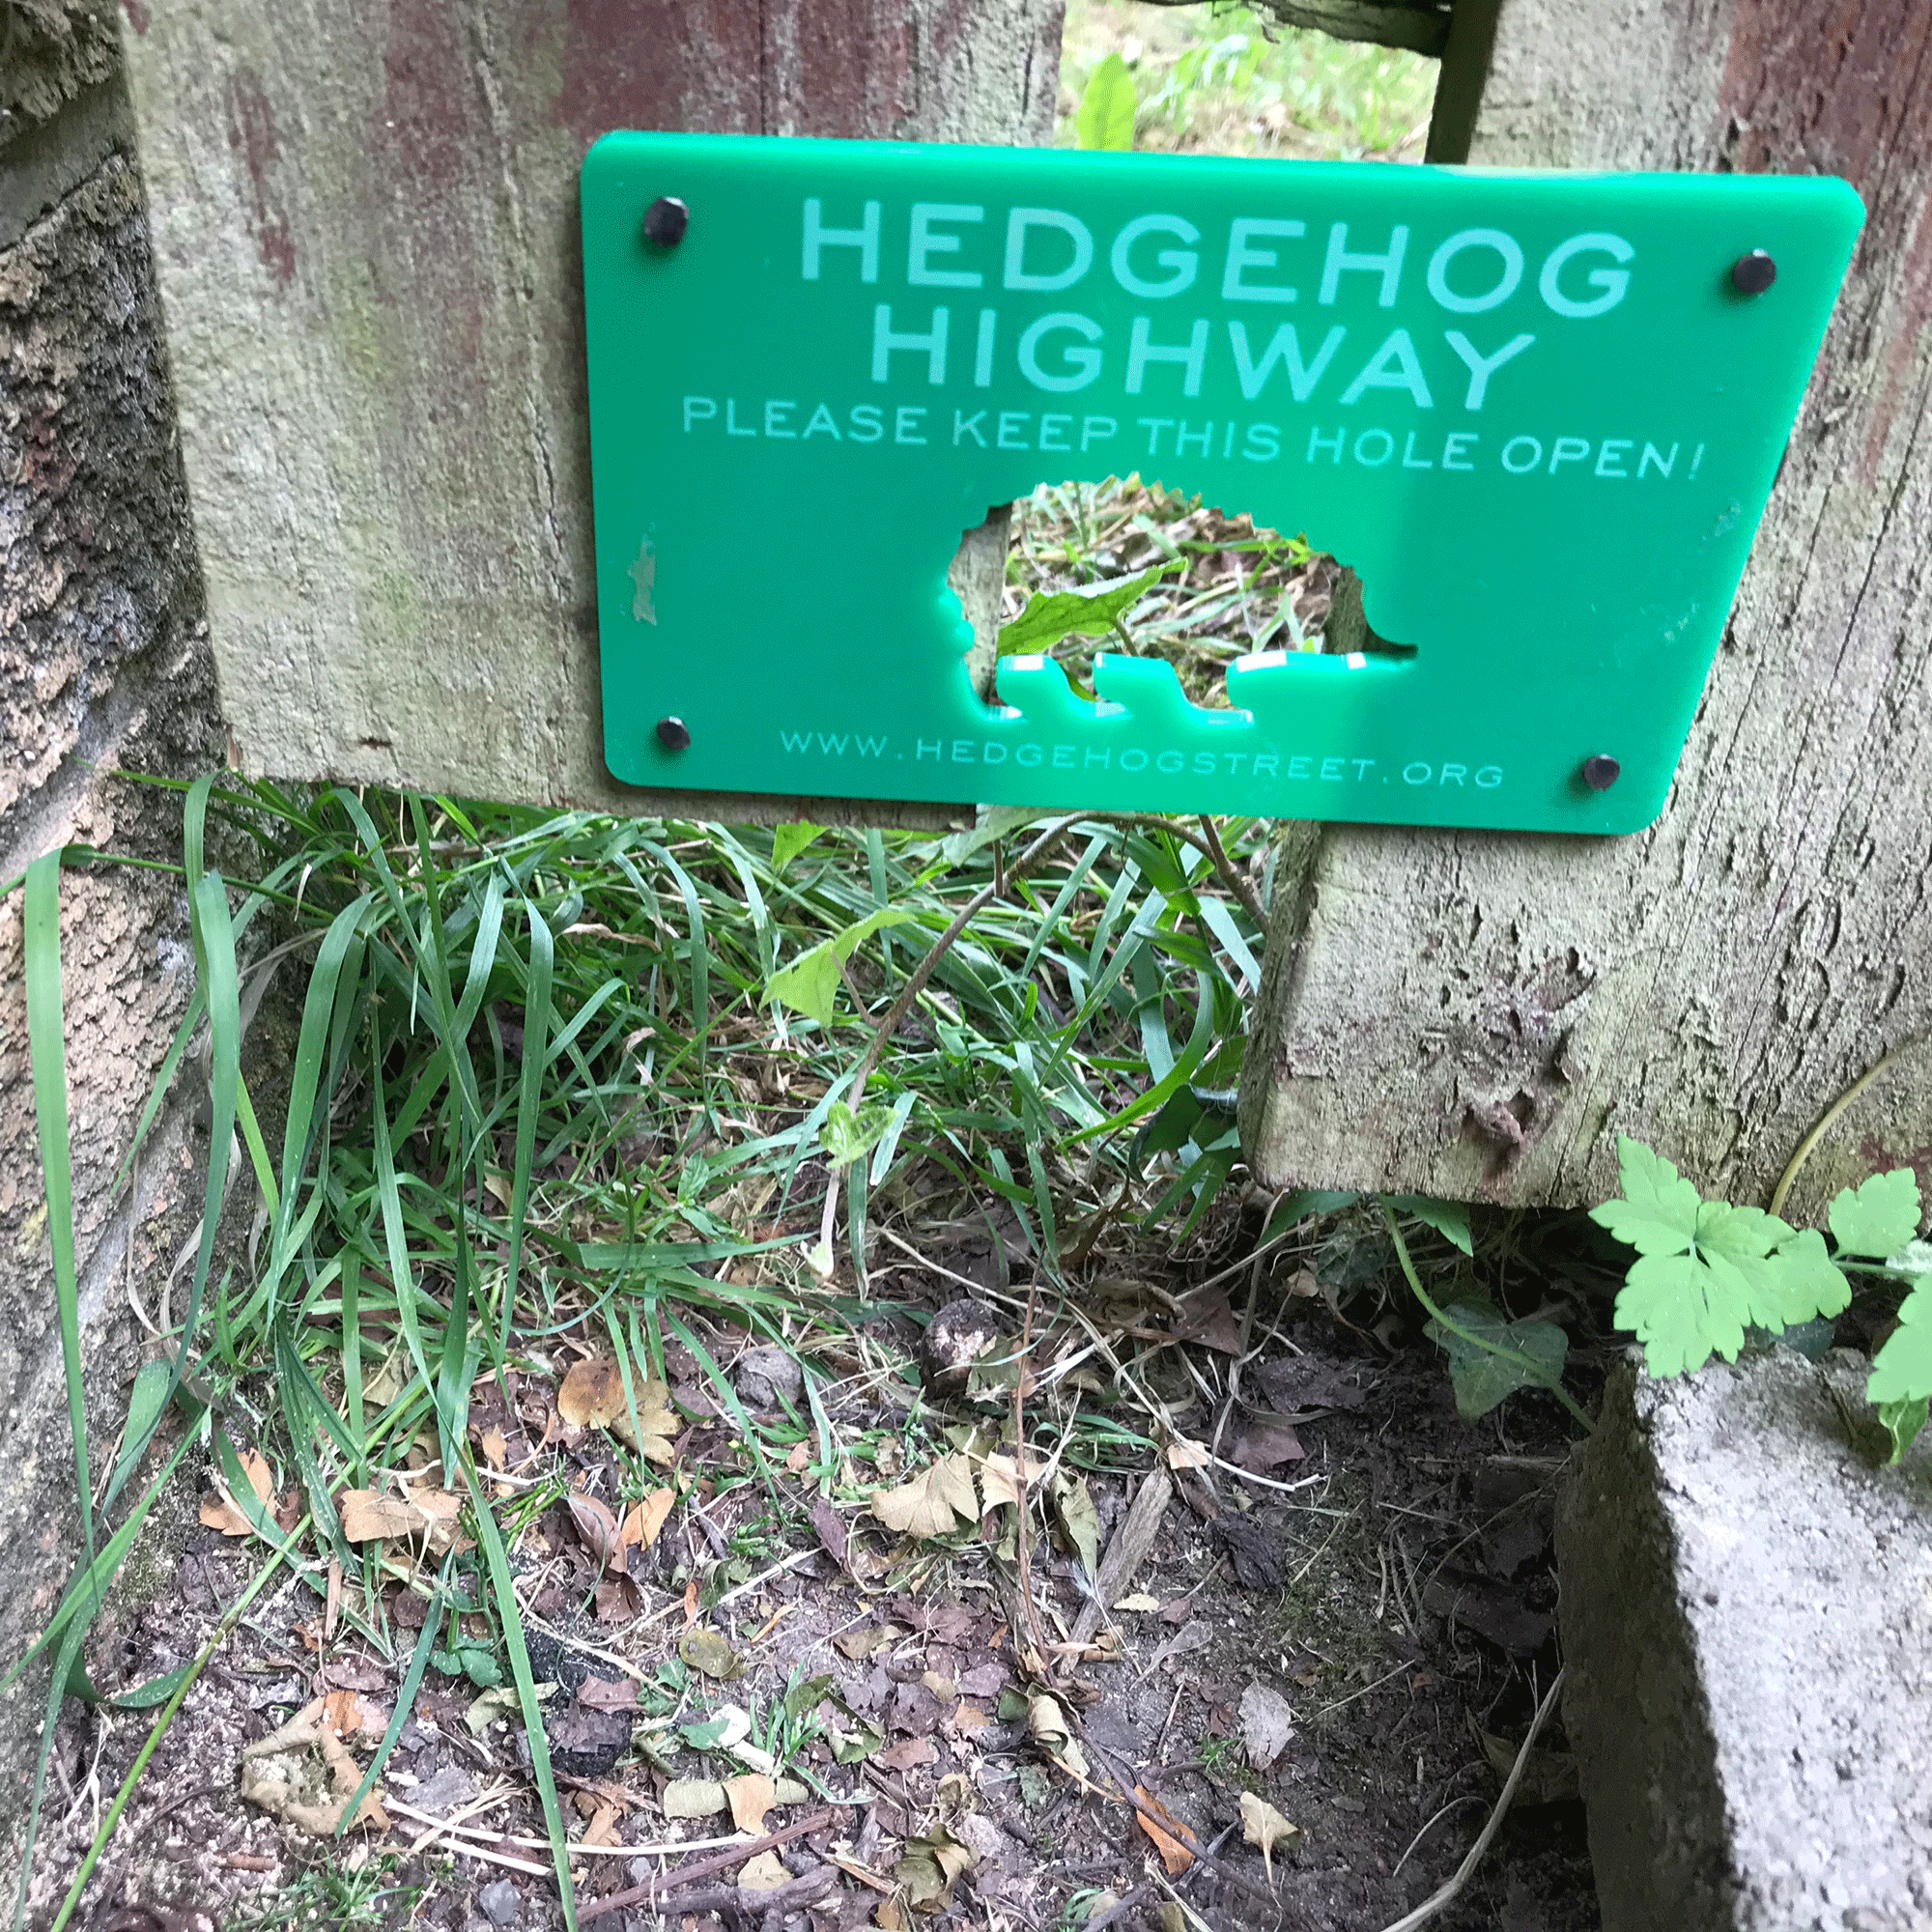 Green hedgehog sign on fence